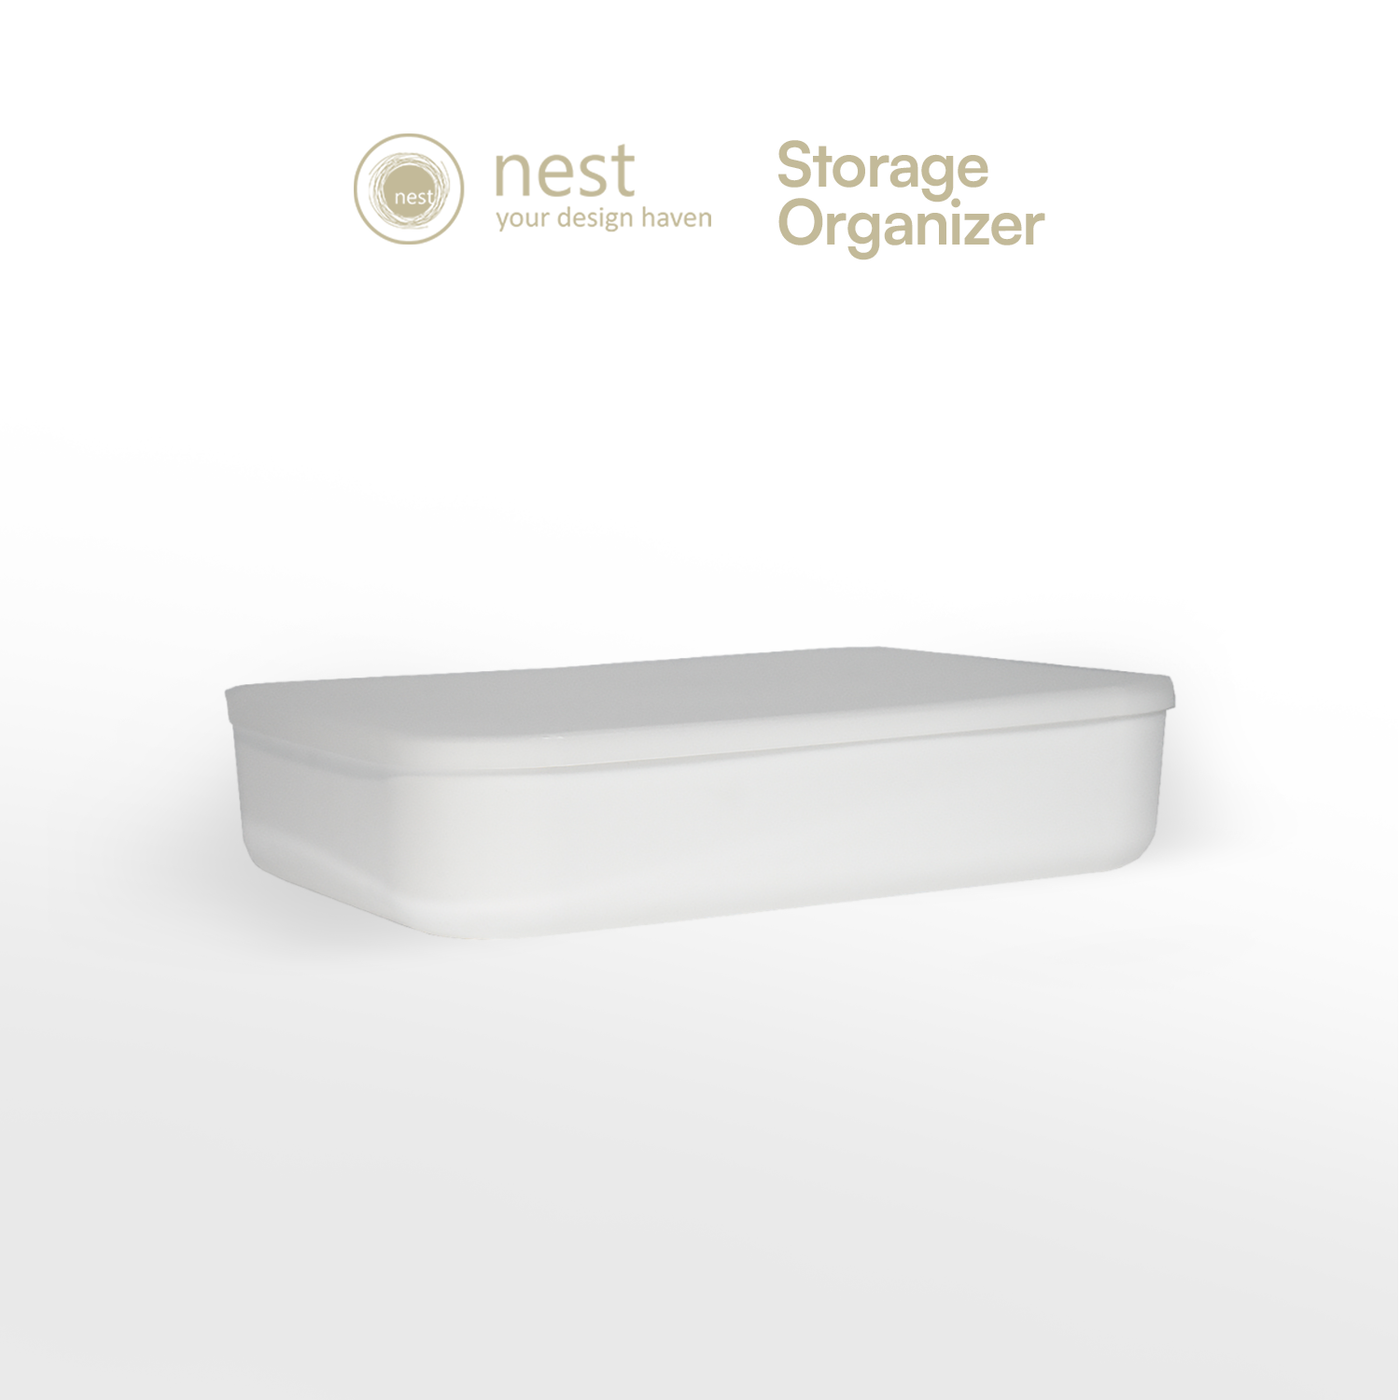 Nest Design Lab Premium Heavy Duty Durable Storage Organizer